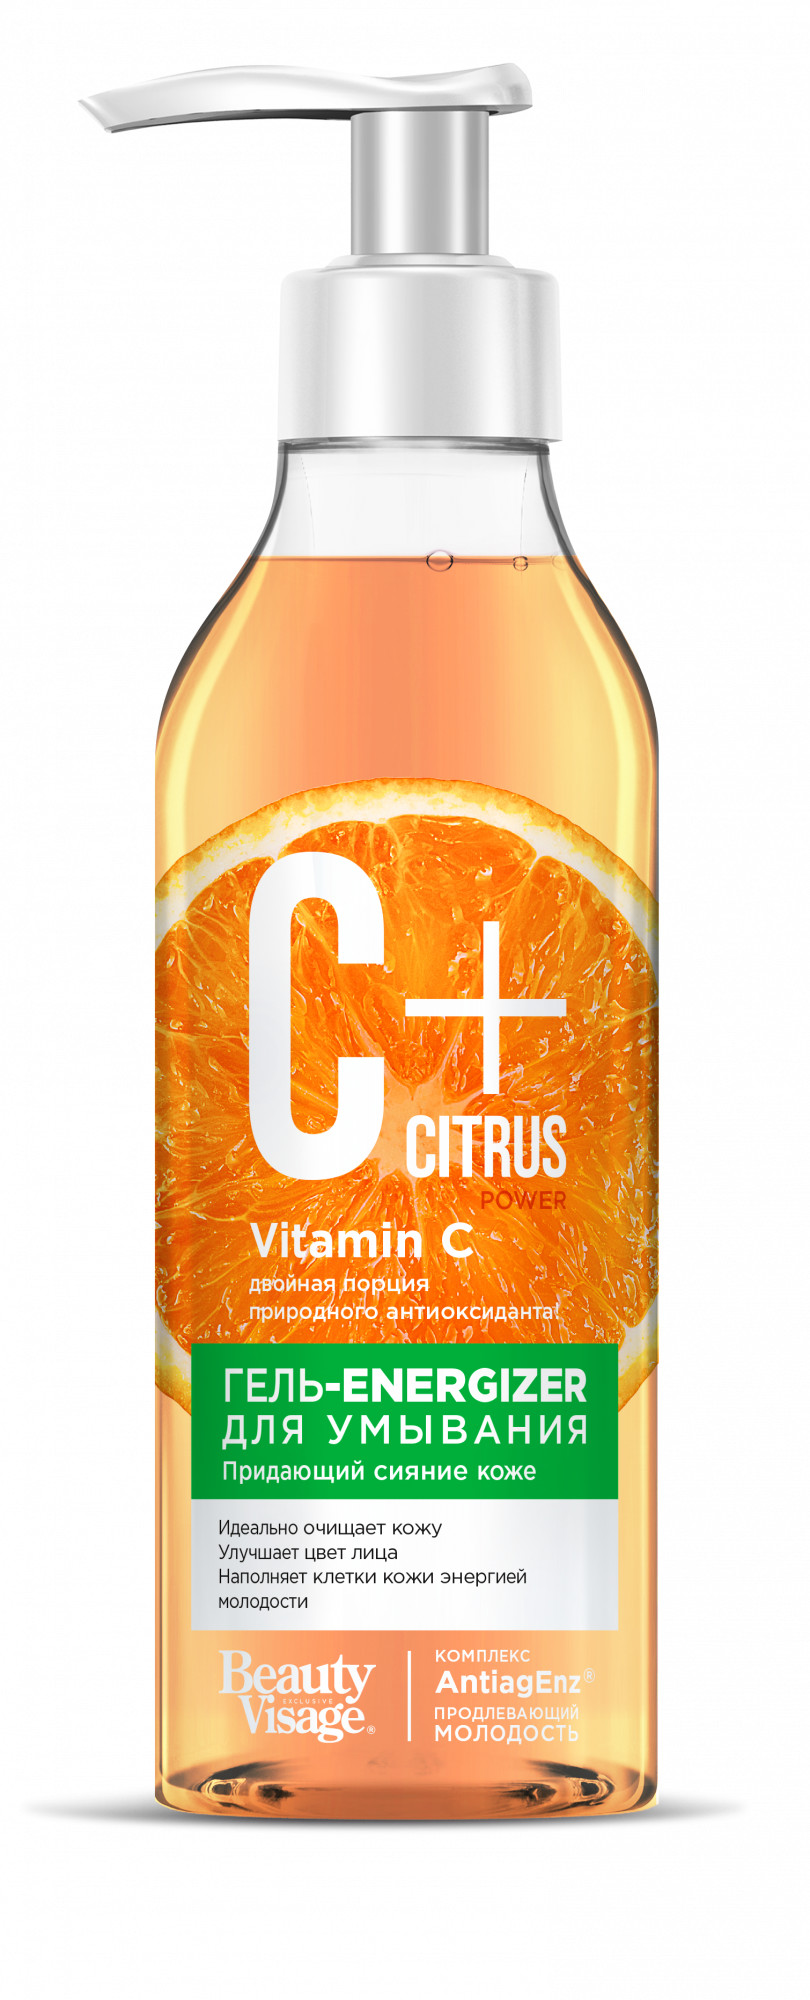 Гель-energizer для умывания Фитокосметик, C+Citrus,  для сияния кожи,  240 мл citrus bomb